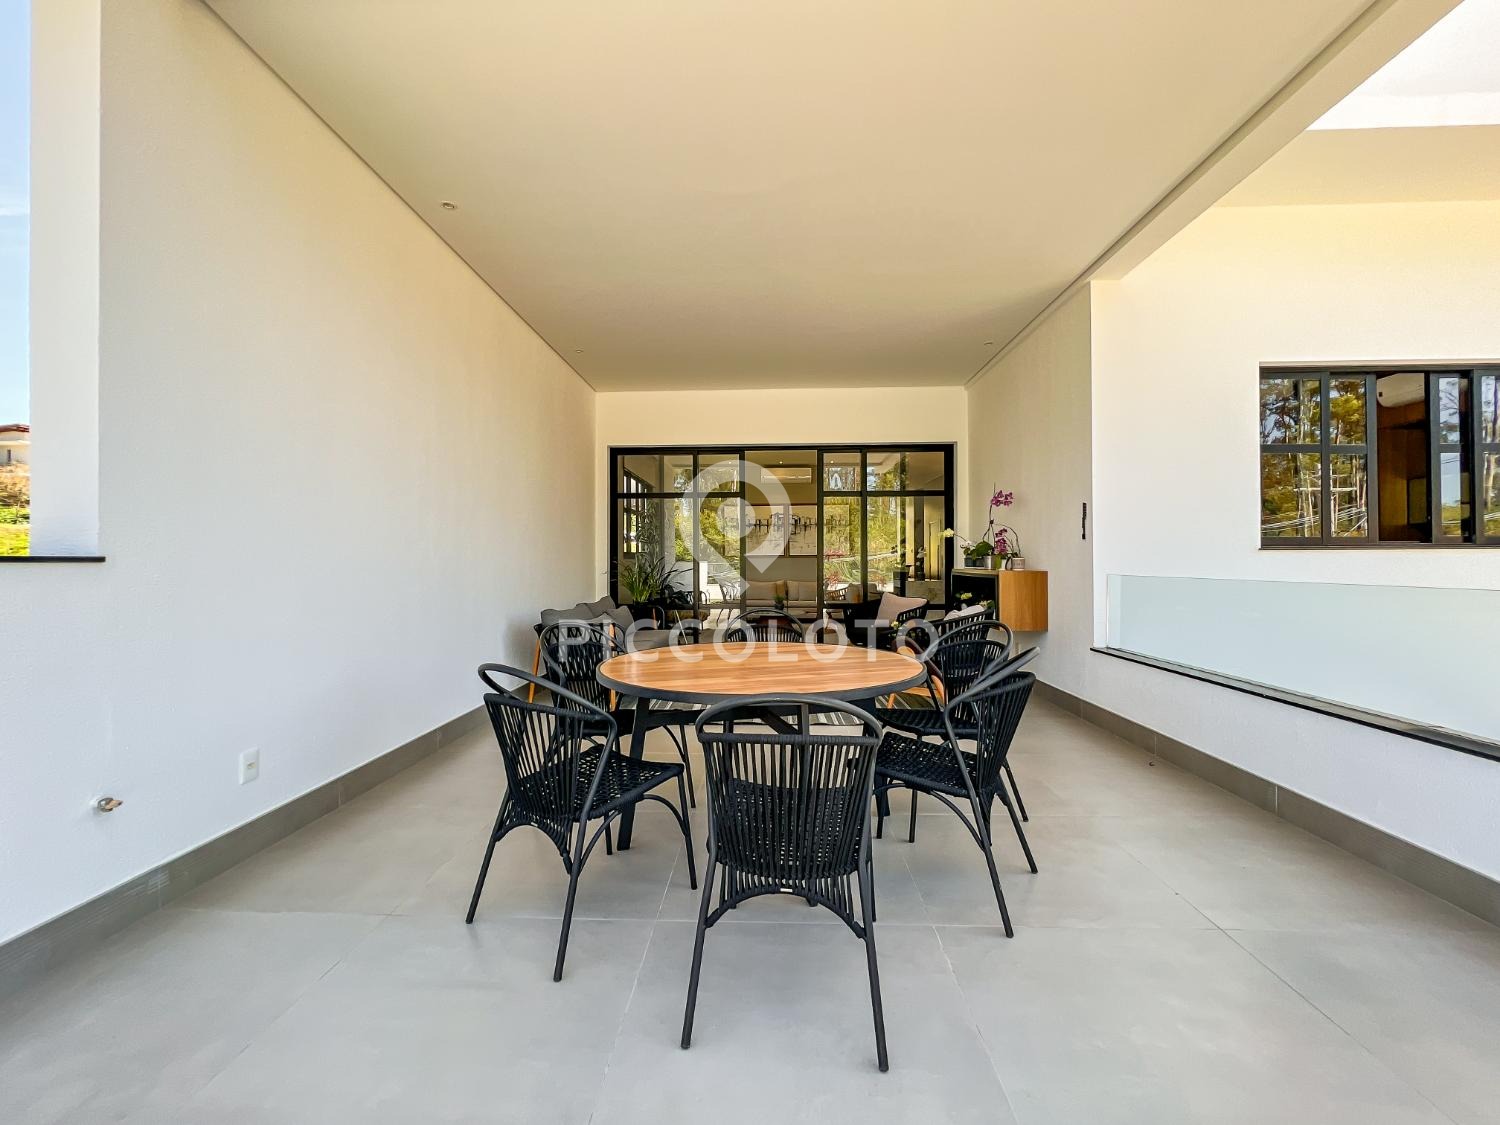 Piccoloto -Casa à venda no Jardim Madalena em Campinas